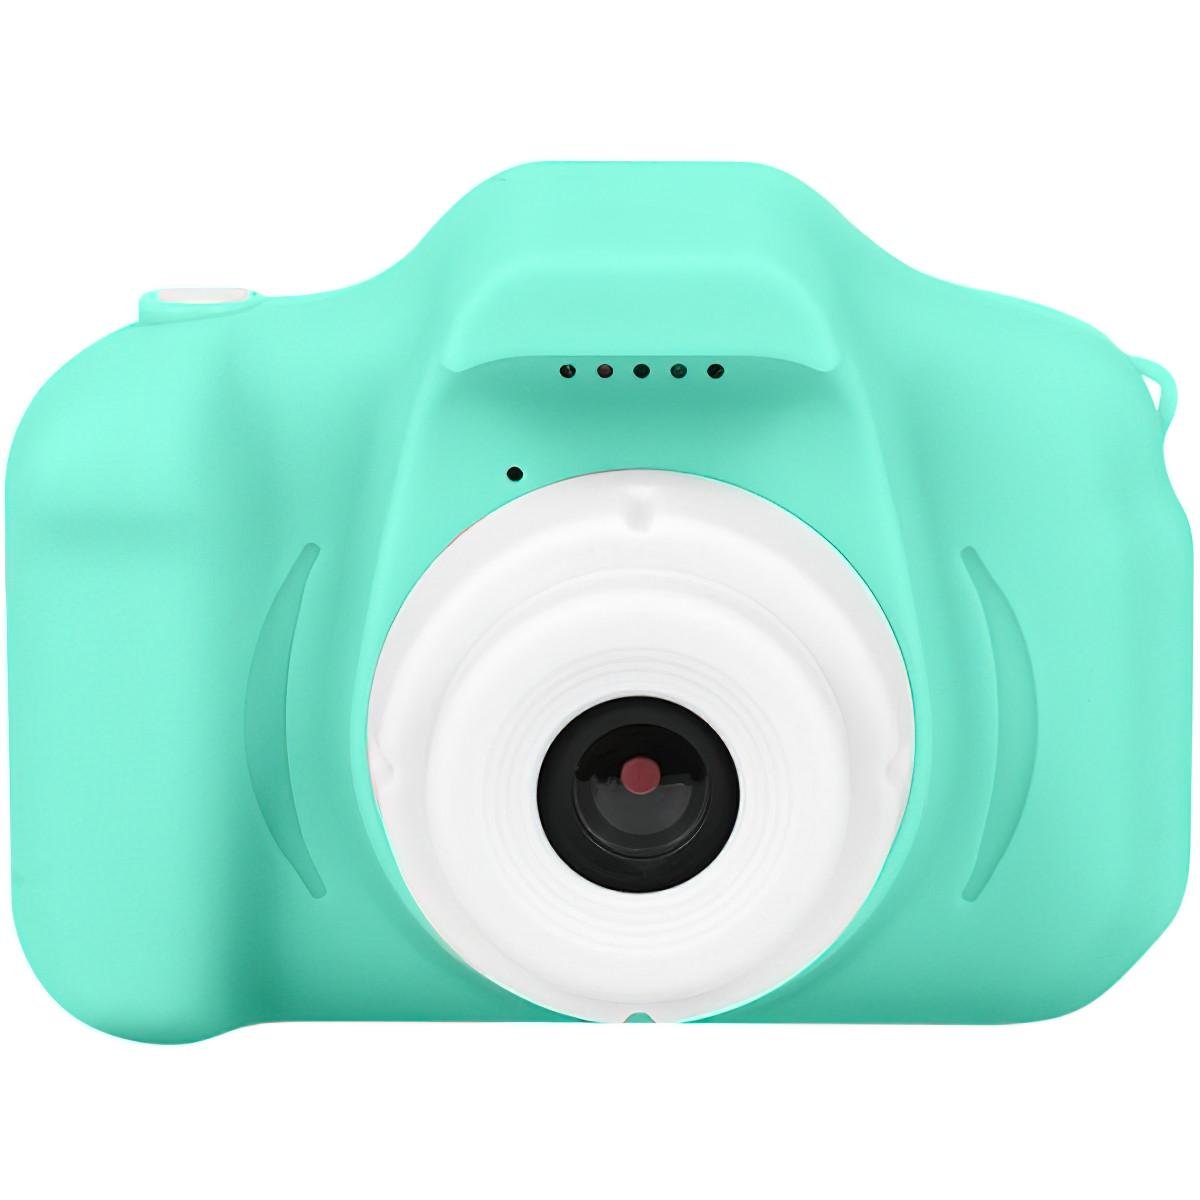 Детский цифровой фотоаппарат Х200 ударопрочный с играми и смешными рамками на фотографии Бирюзовый (2ed6b18c)